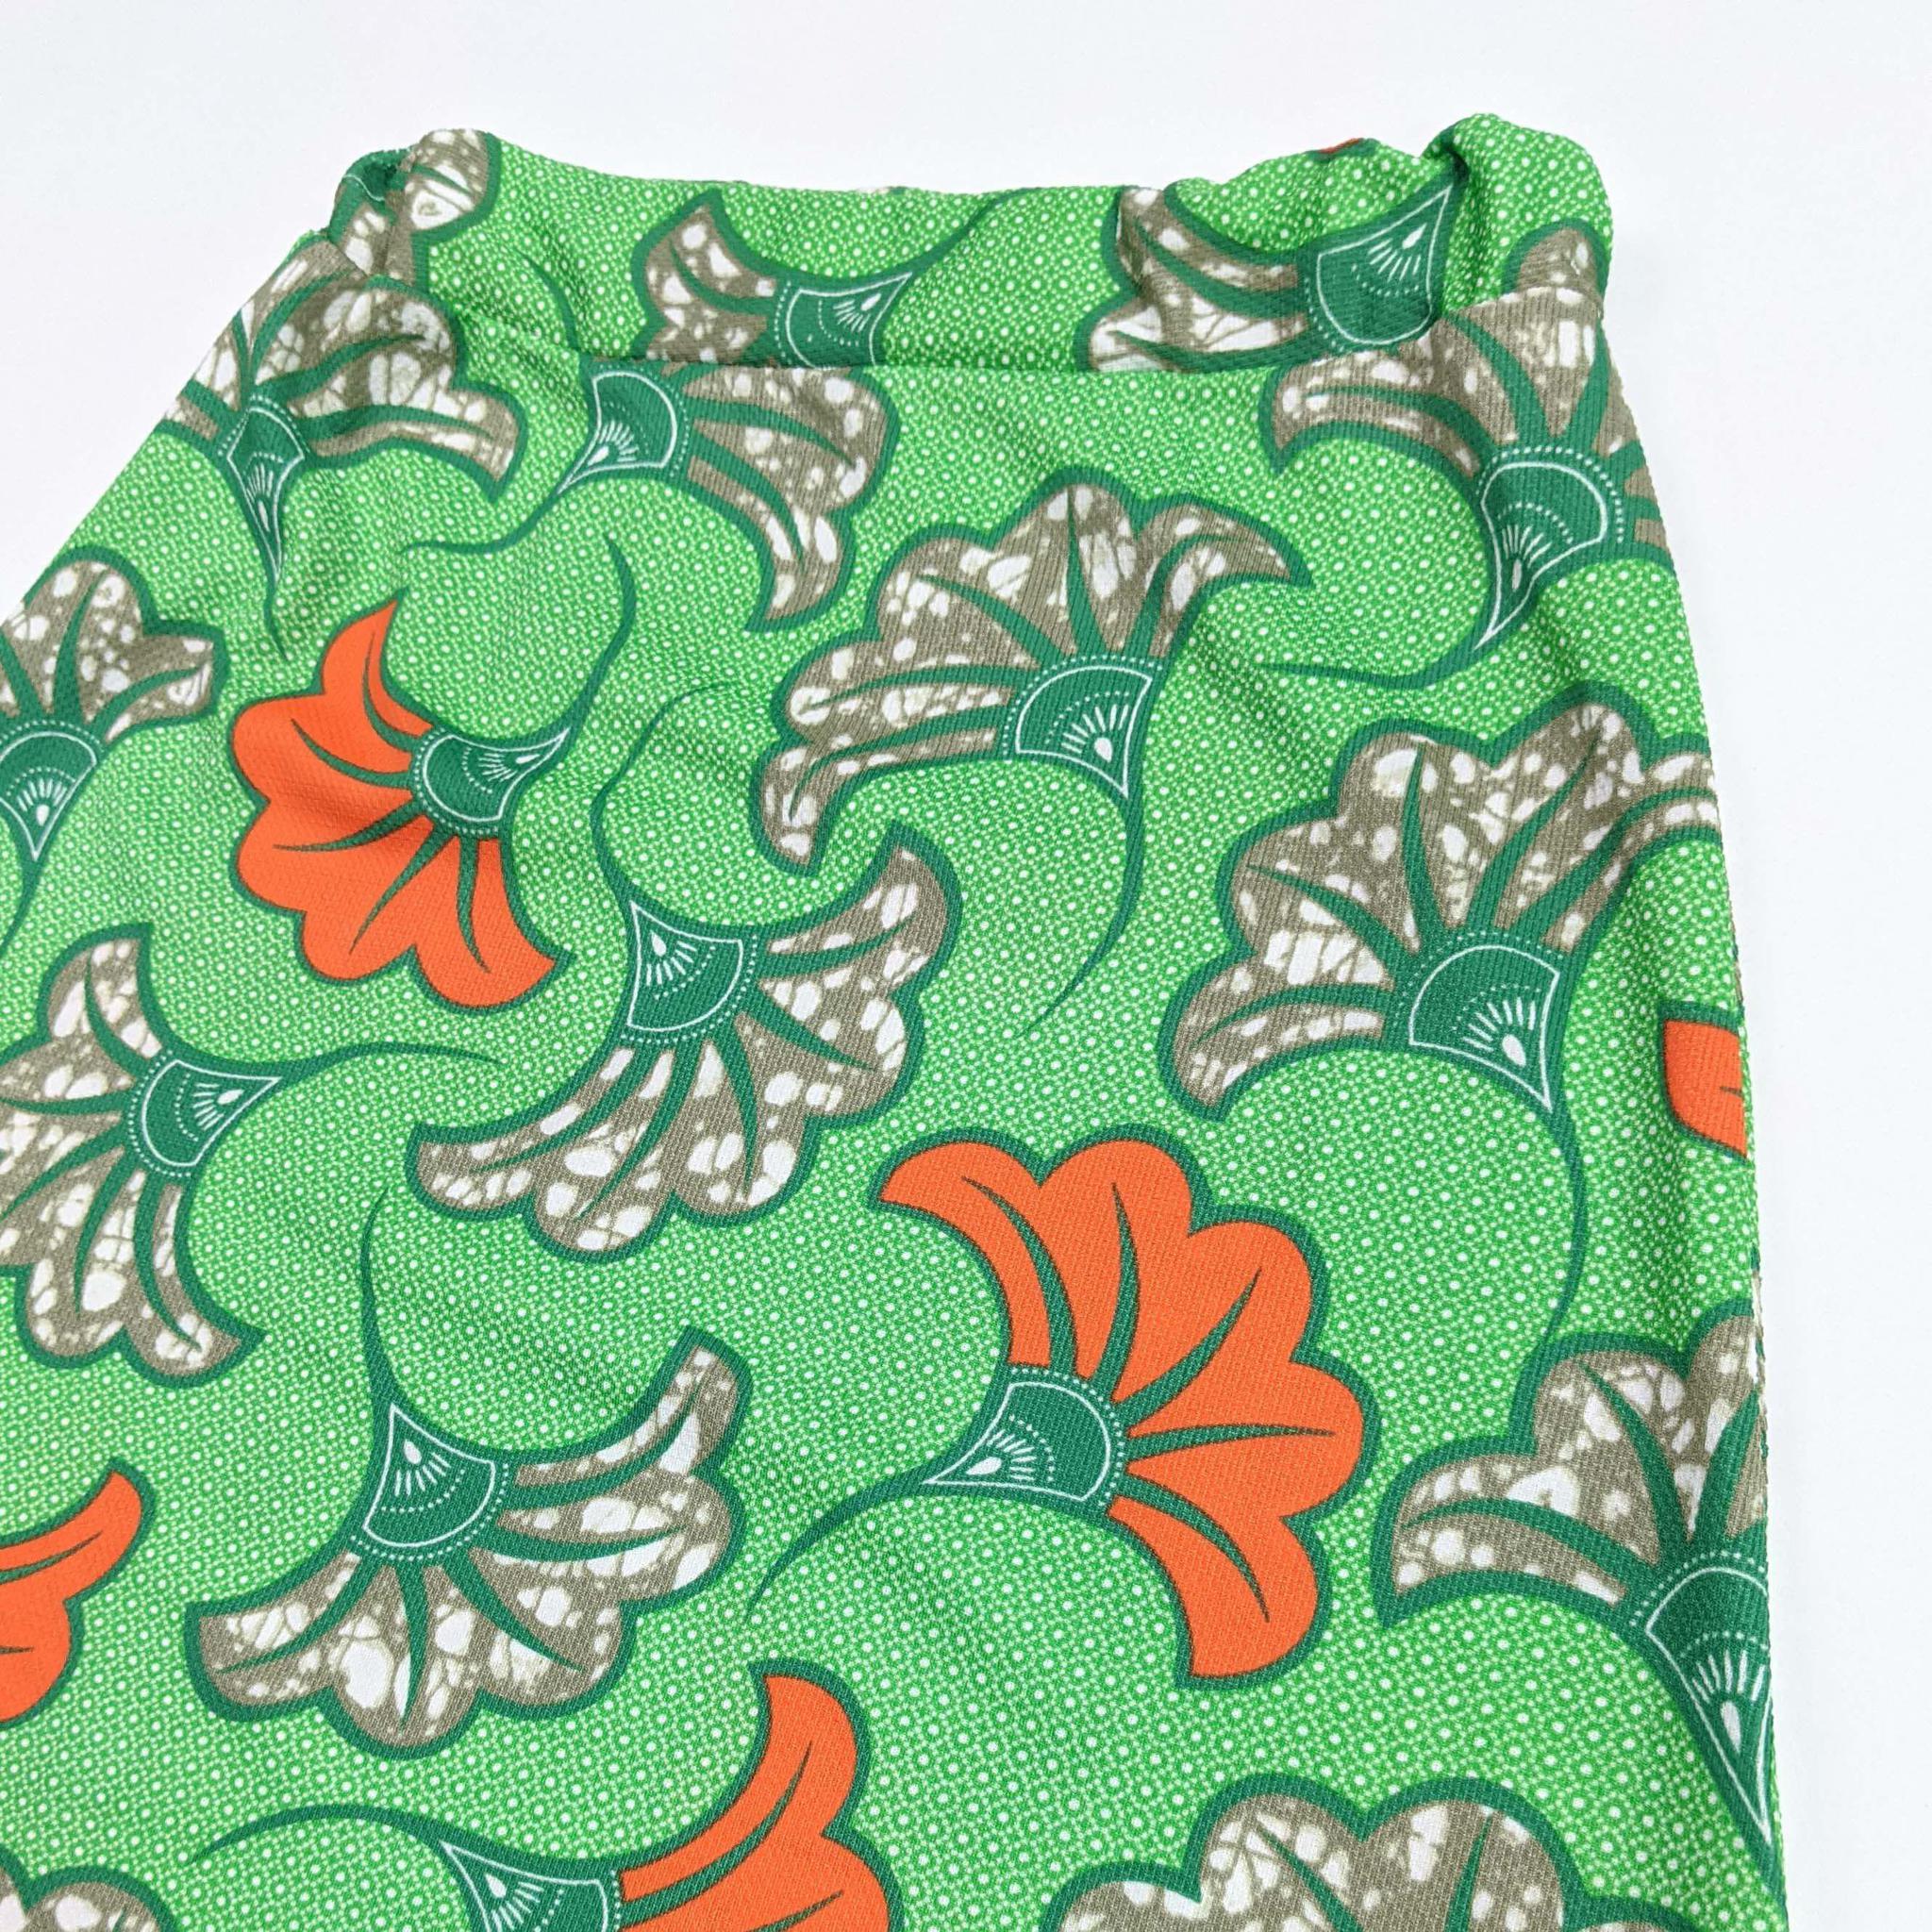 Green & Orange Print Long Skirt